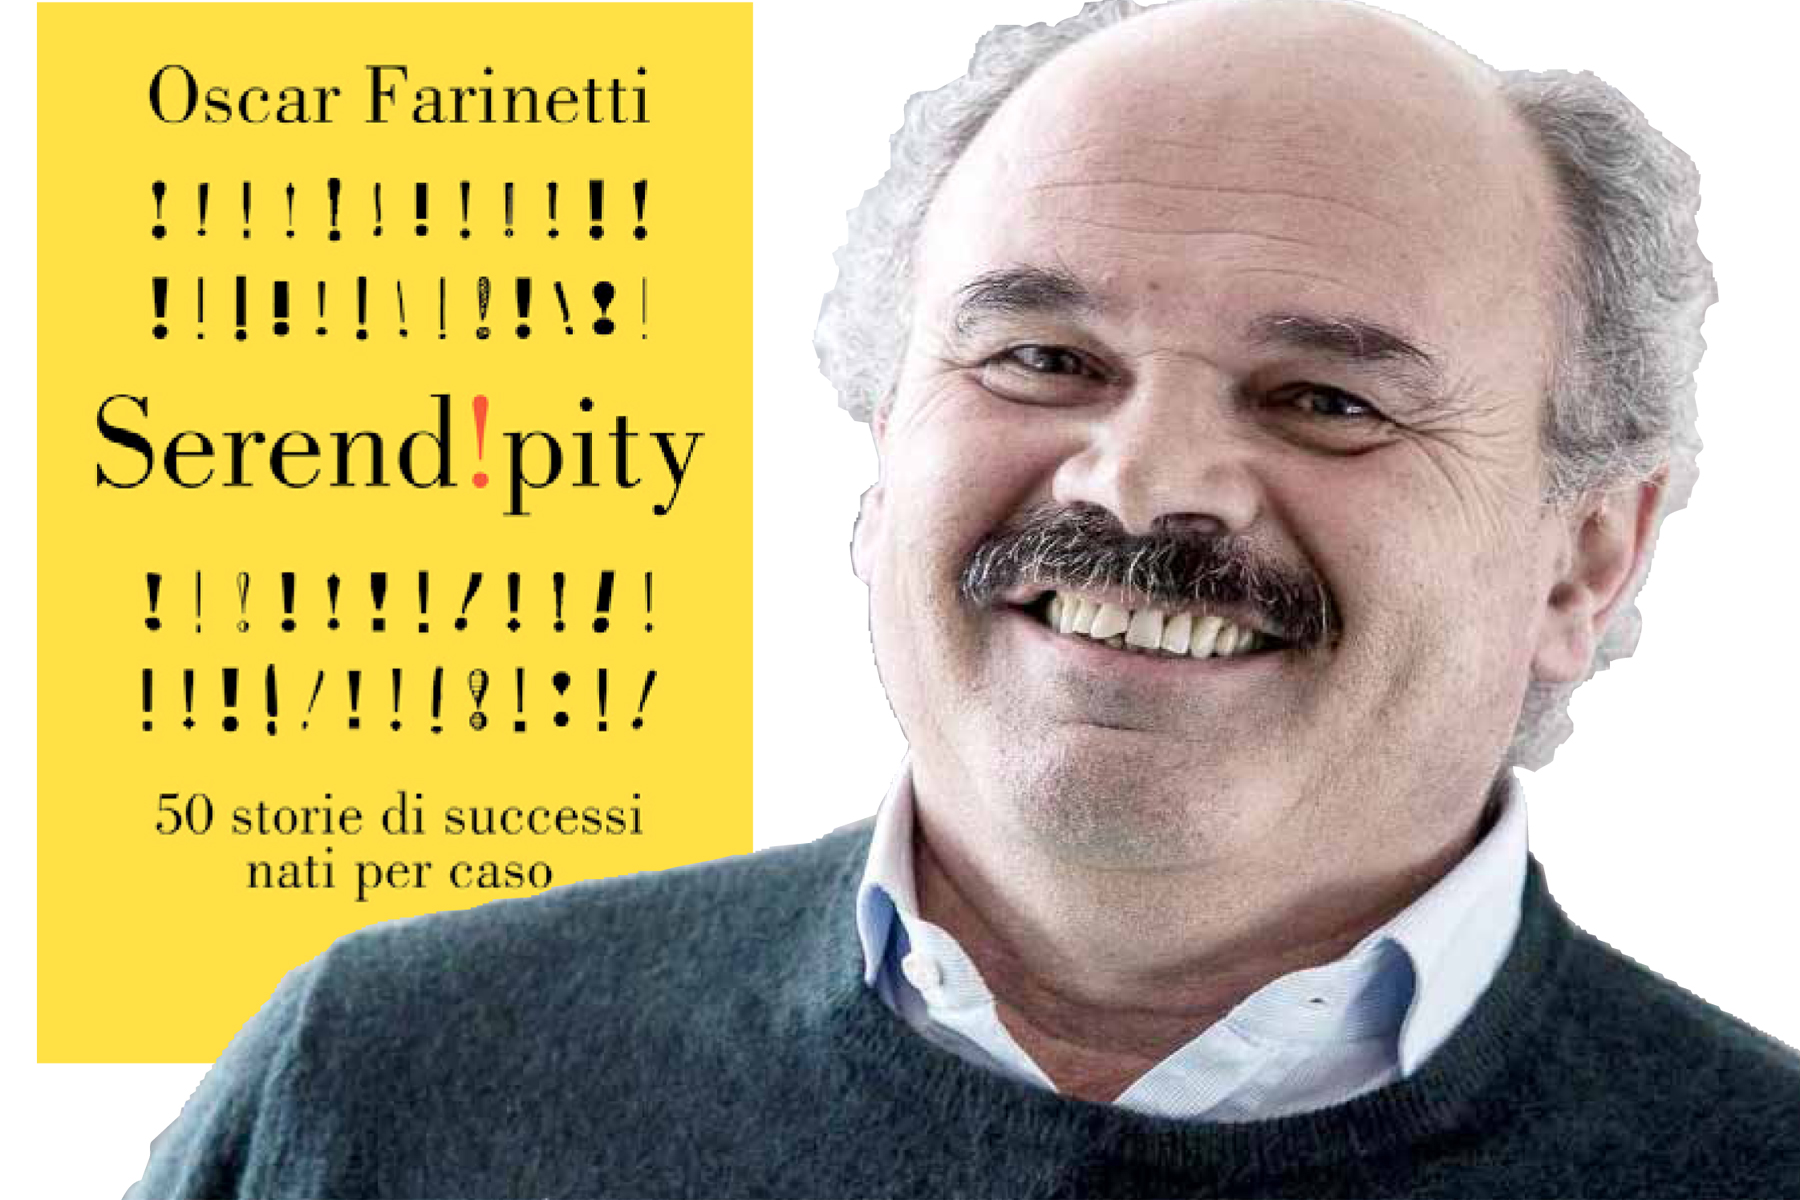 Oscar Farinetti presenta "Serend!pity"